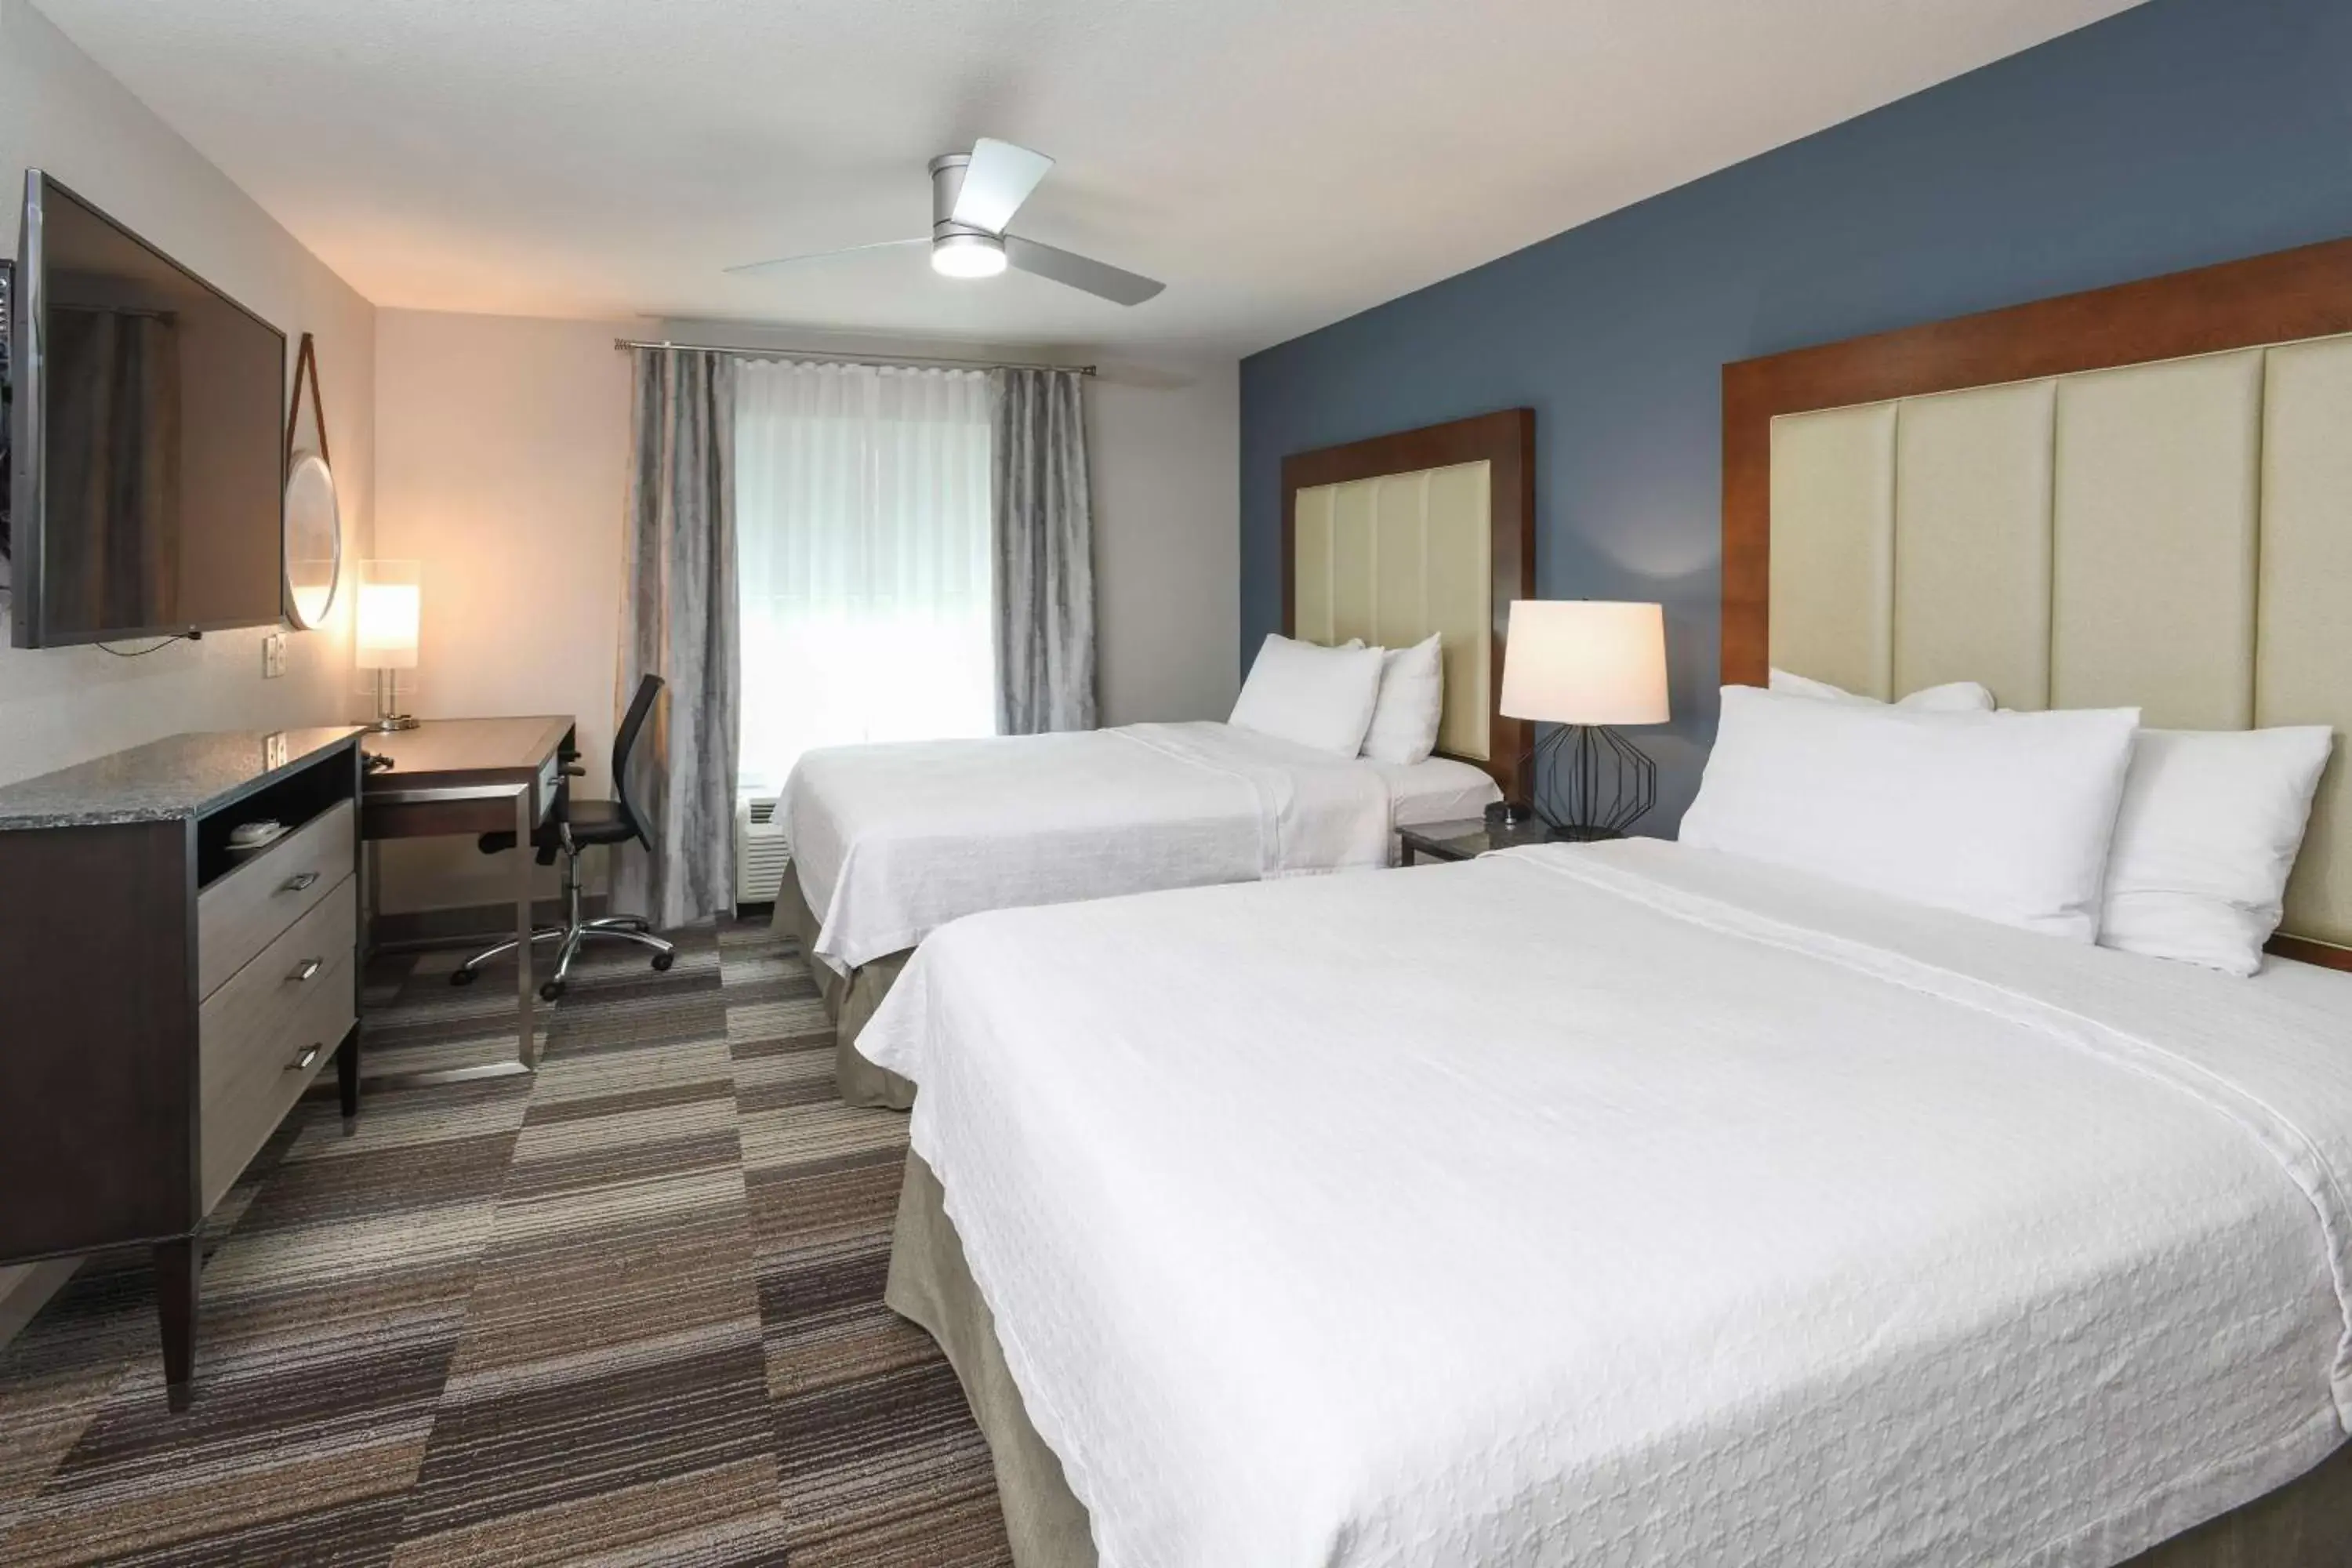 Bedroom in Homewood Suites Cincinnati Airport South-Florence